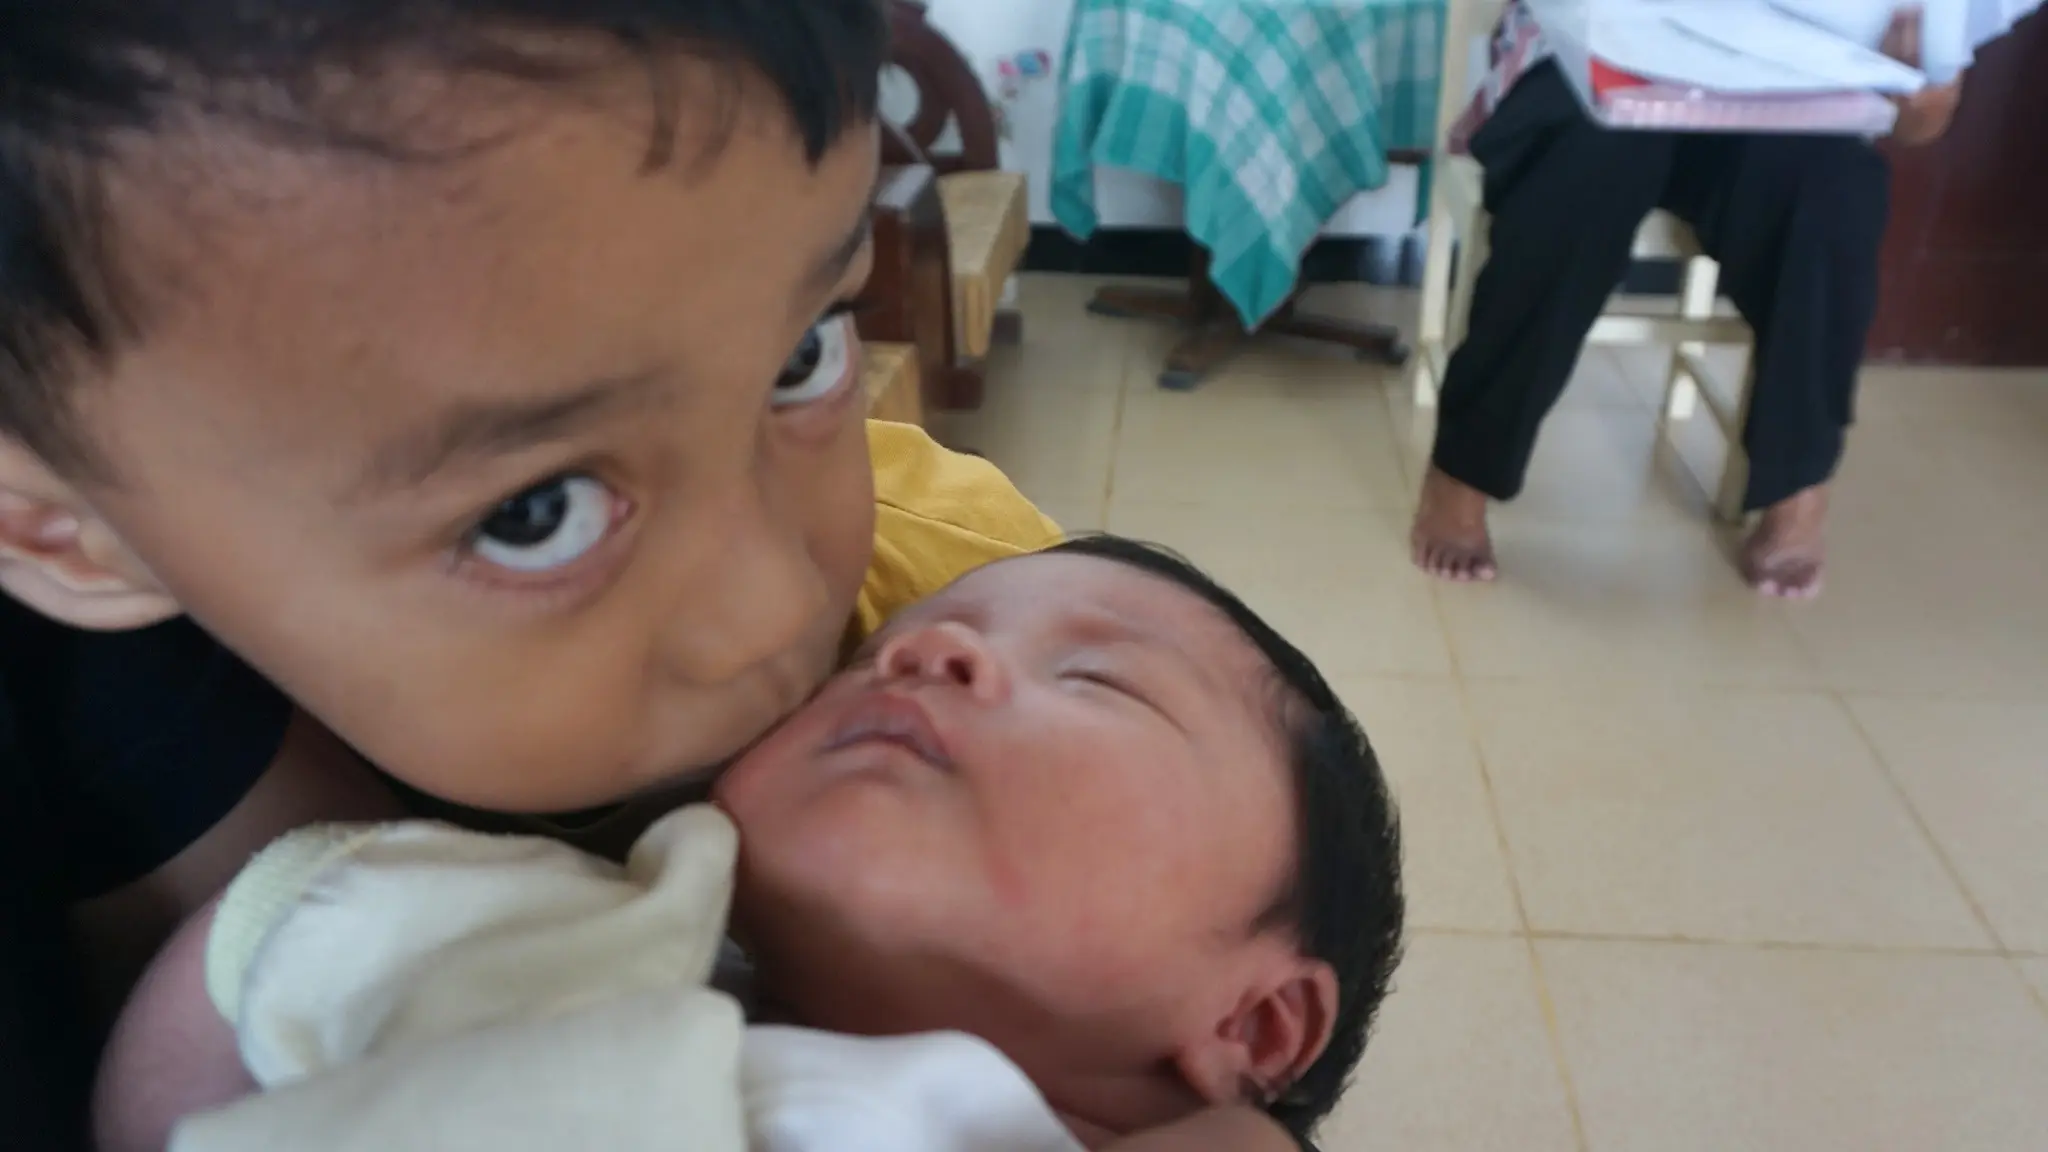 Bayi bernama Indonesia sedang dicium sang kakak, Naufal di kediamannya di Sawit, Boyolali.(Liputan6.com/Fajar Abrori